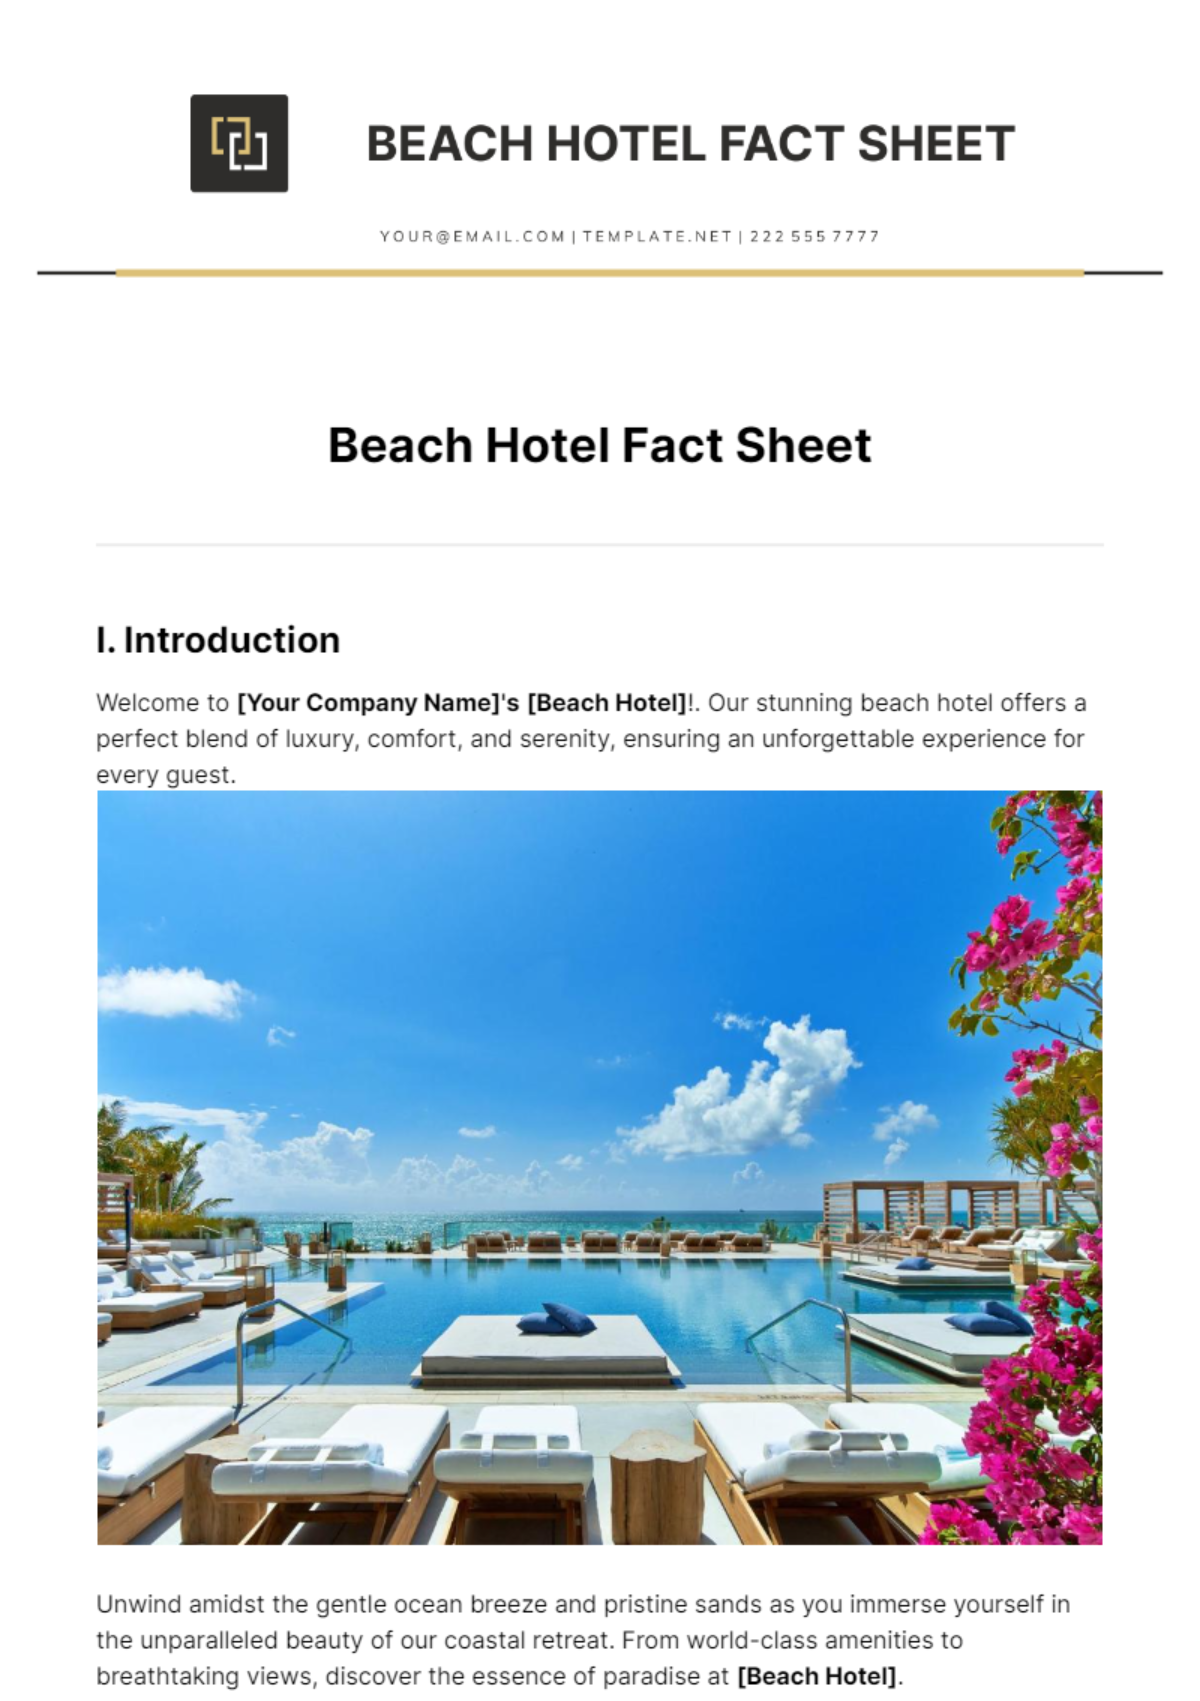 Beach Hotel Fact Sheet Template